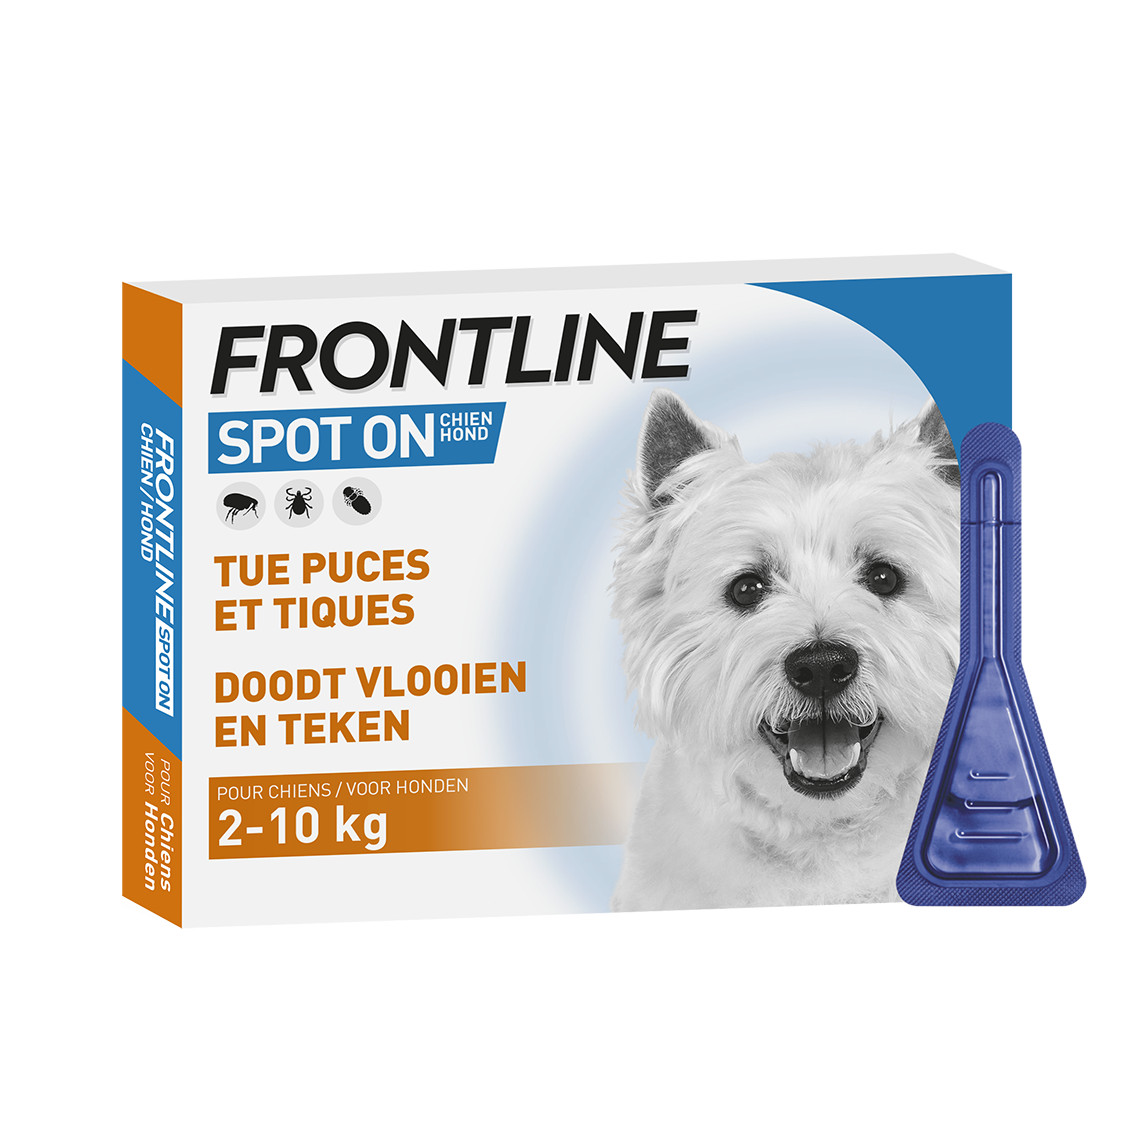 Frontline Spot On pour chiens 2-10 kg / S